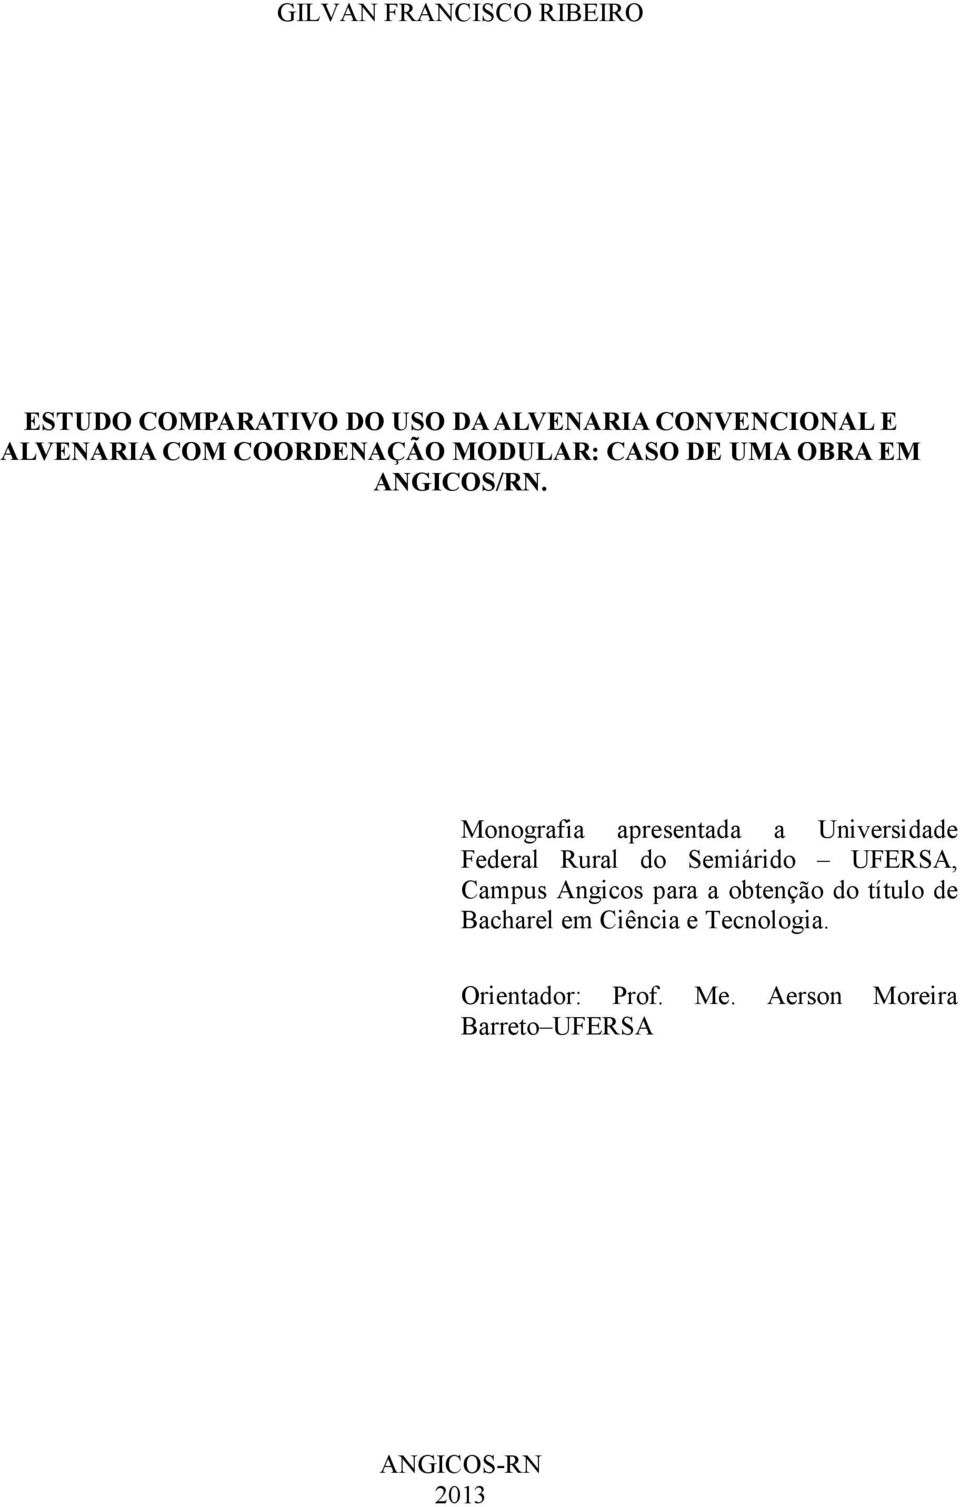 Monografia apresentada a Universidade Federal Rural do Semiárido UFERSA, Campus Angicos